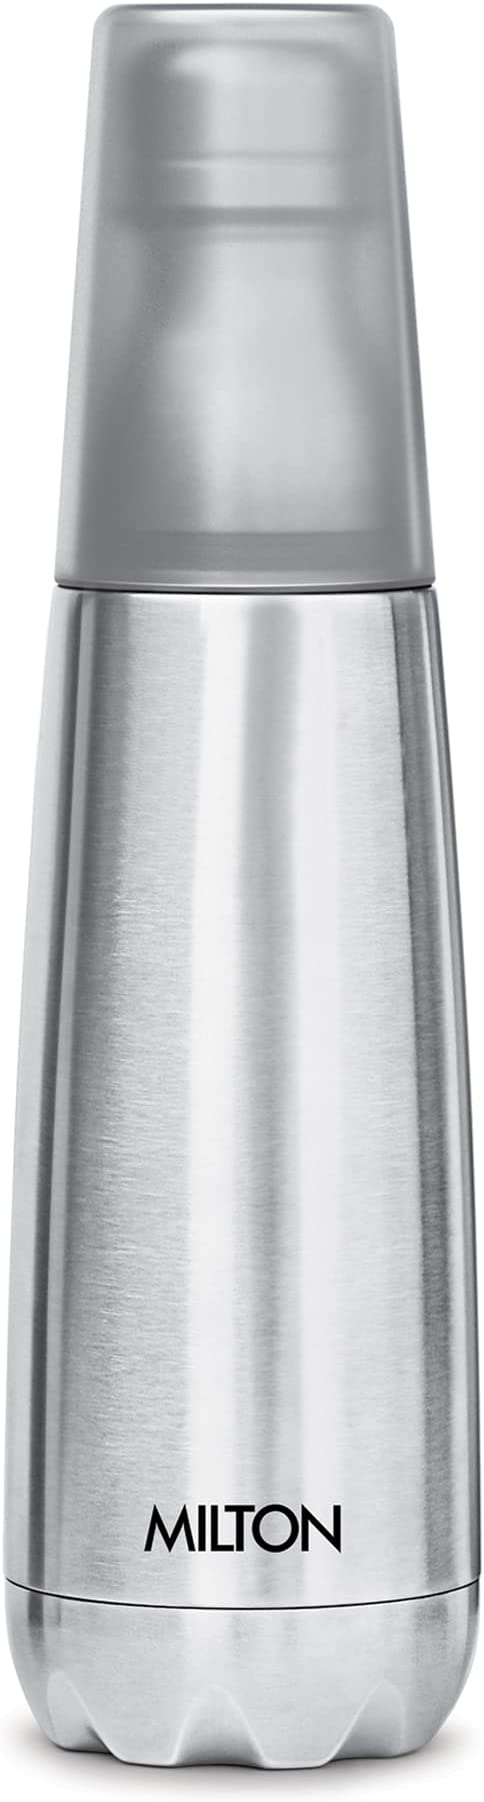 زجاجة مياه من ميلتون فيرتيكس -750 مع ترمس غير قابل للكسر – 750 مل، فضي احصل على زجاجة مياه مع ترمس غير قابل للكسر من ميلتون فيرتيكس بسعة 750 مل ولون فضي، مثالية للاستخدام اليومي والرحلات الخارجية.